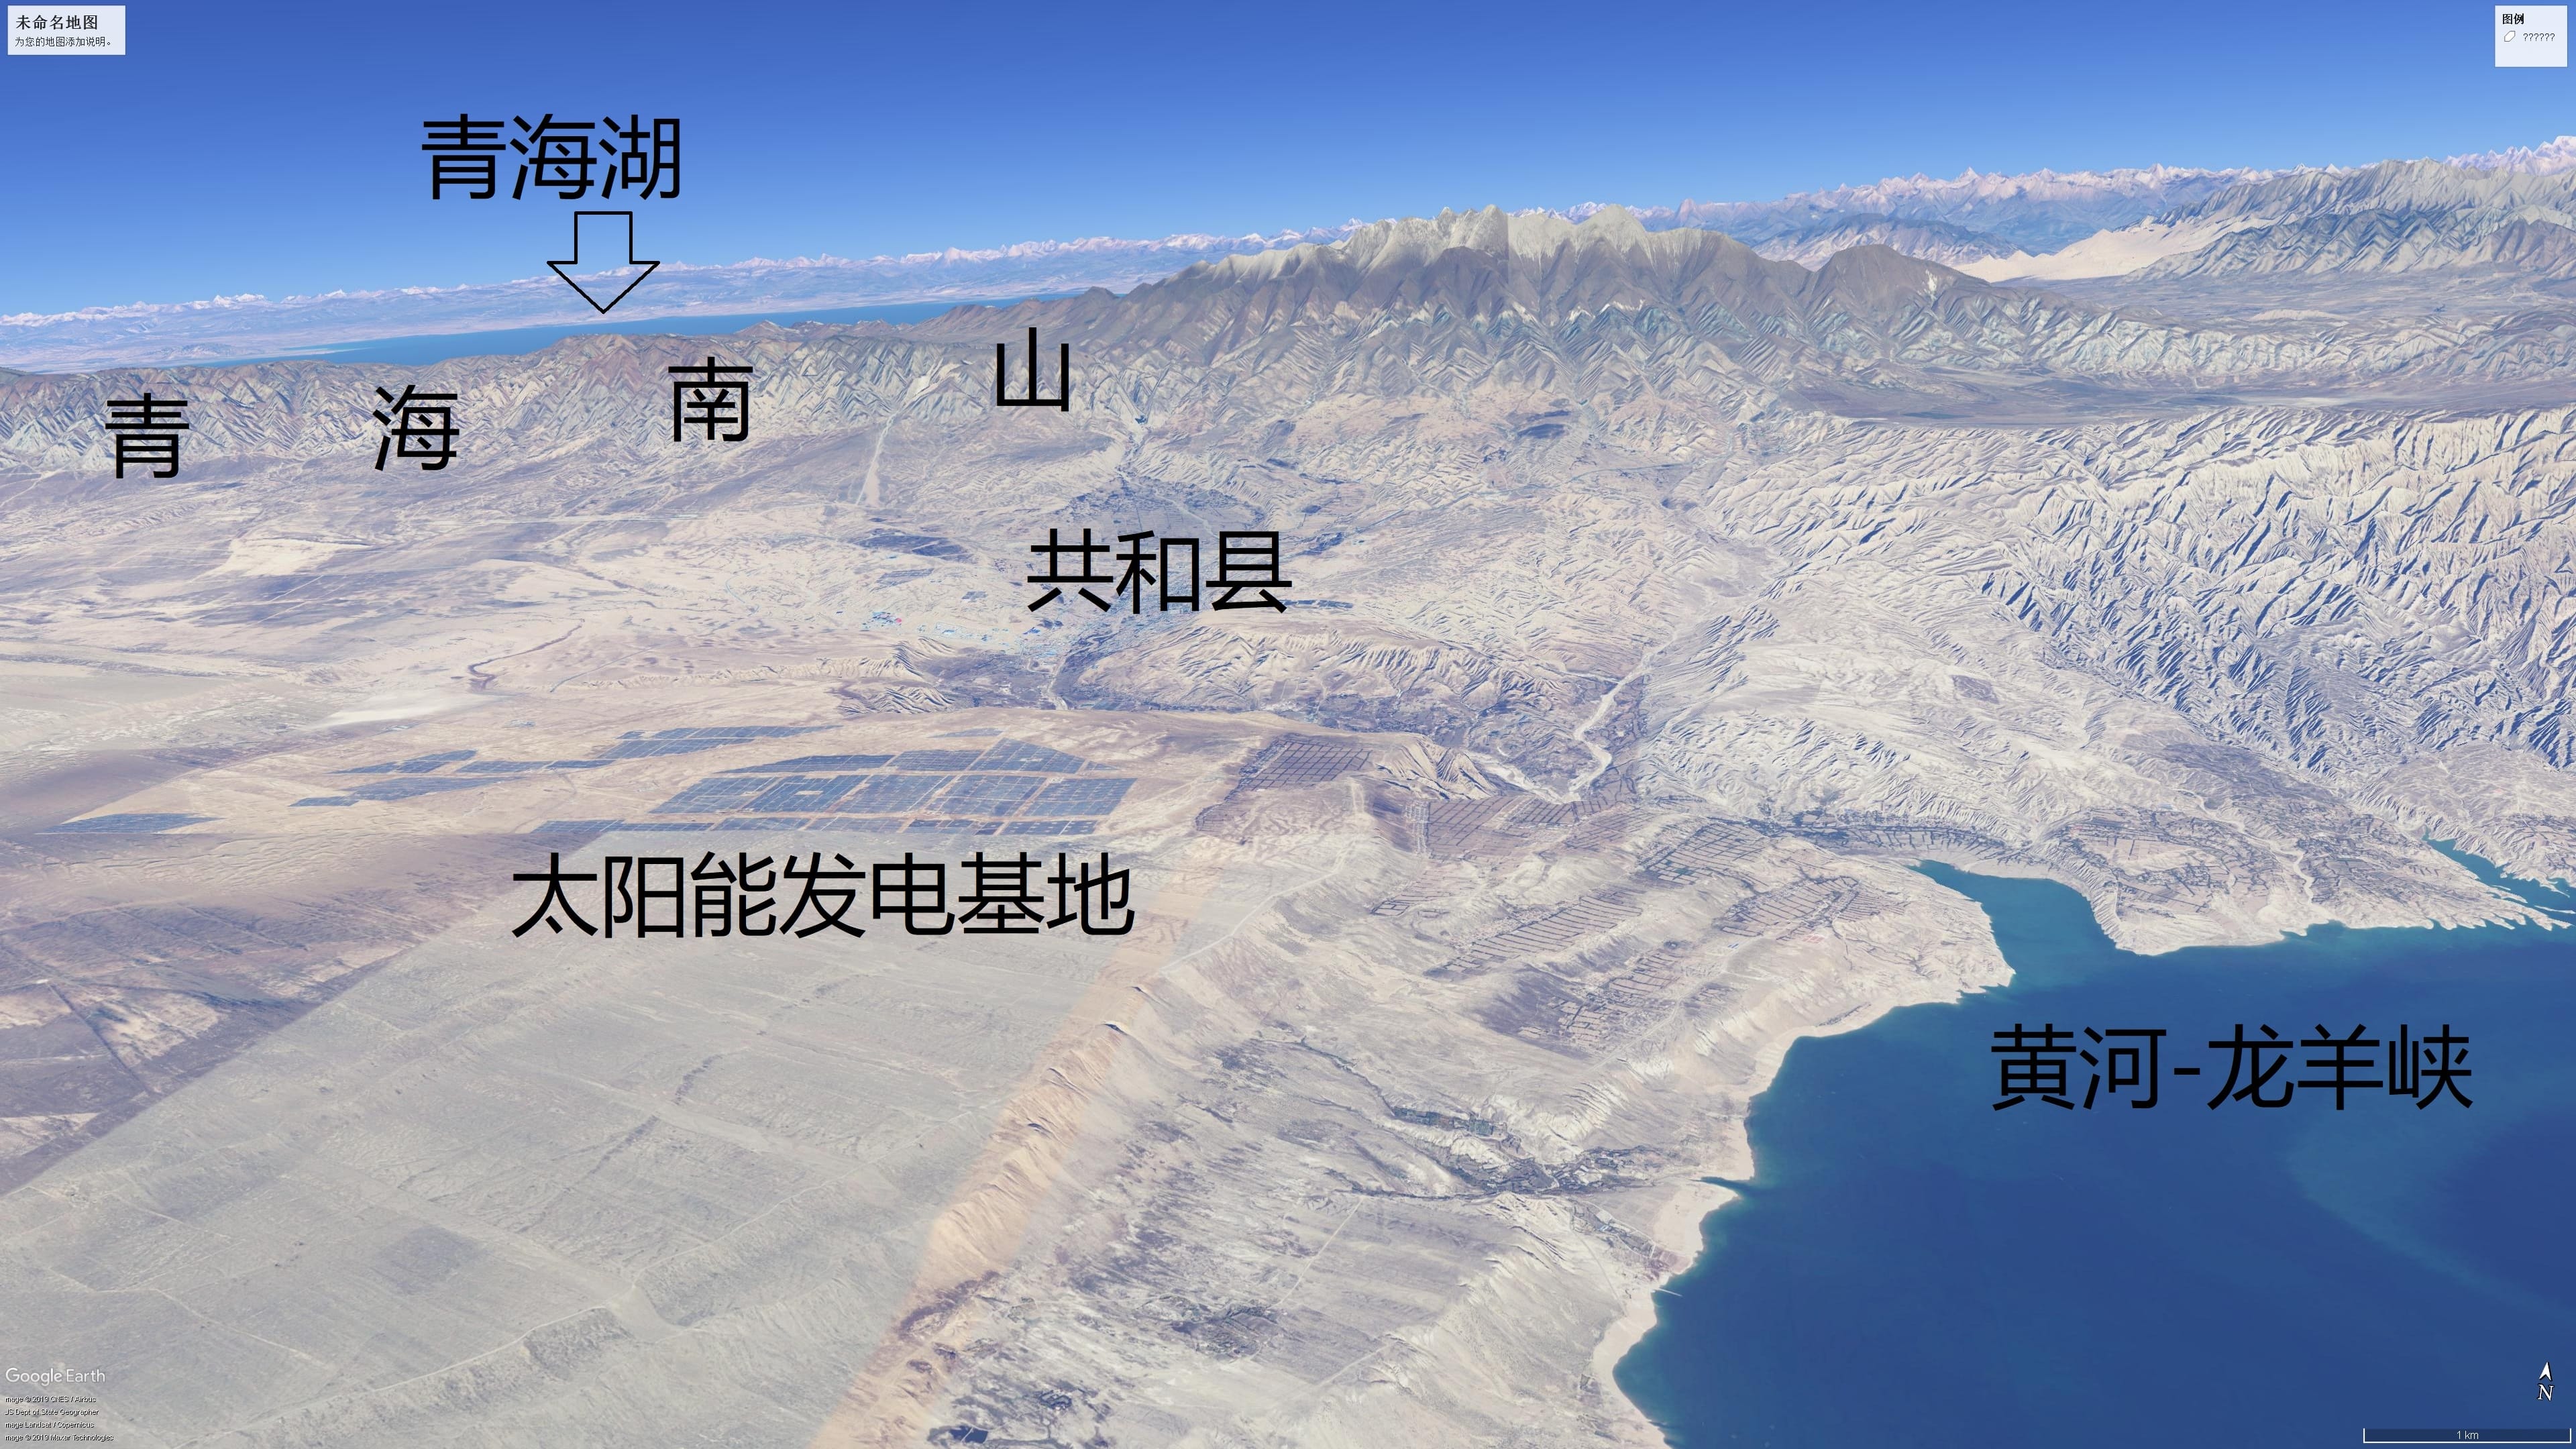 青海湖是国内最大的盐水湖吗 青海湖是我国最大的咸水湖,面积约4500公顷(图5)